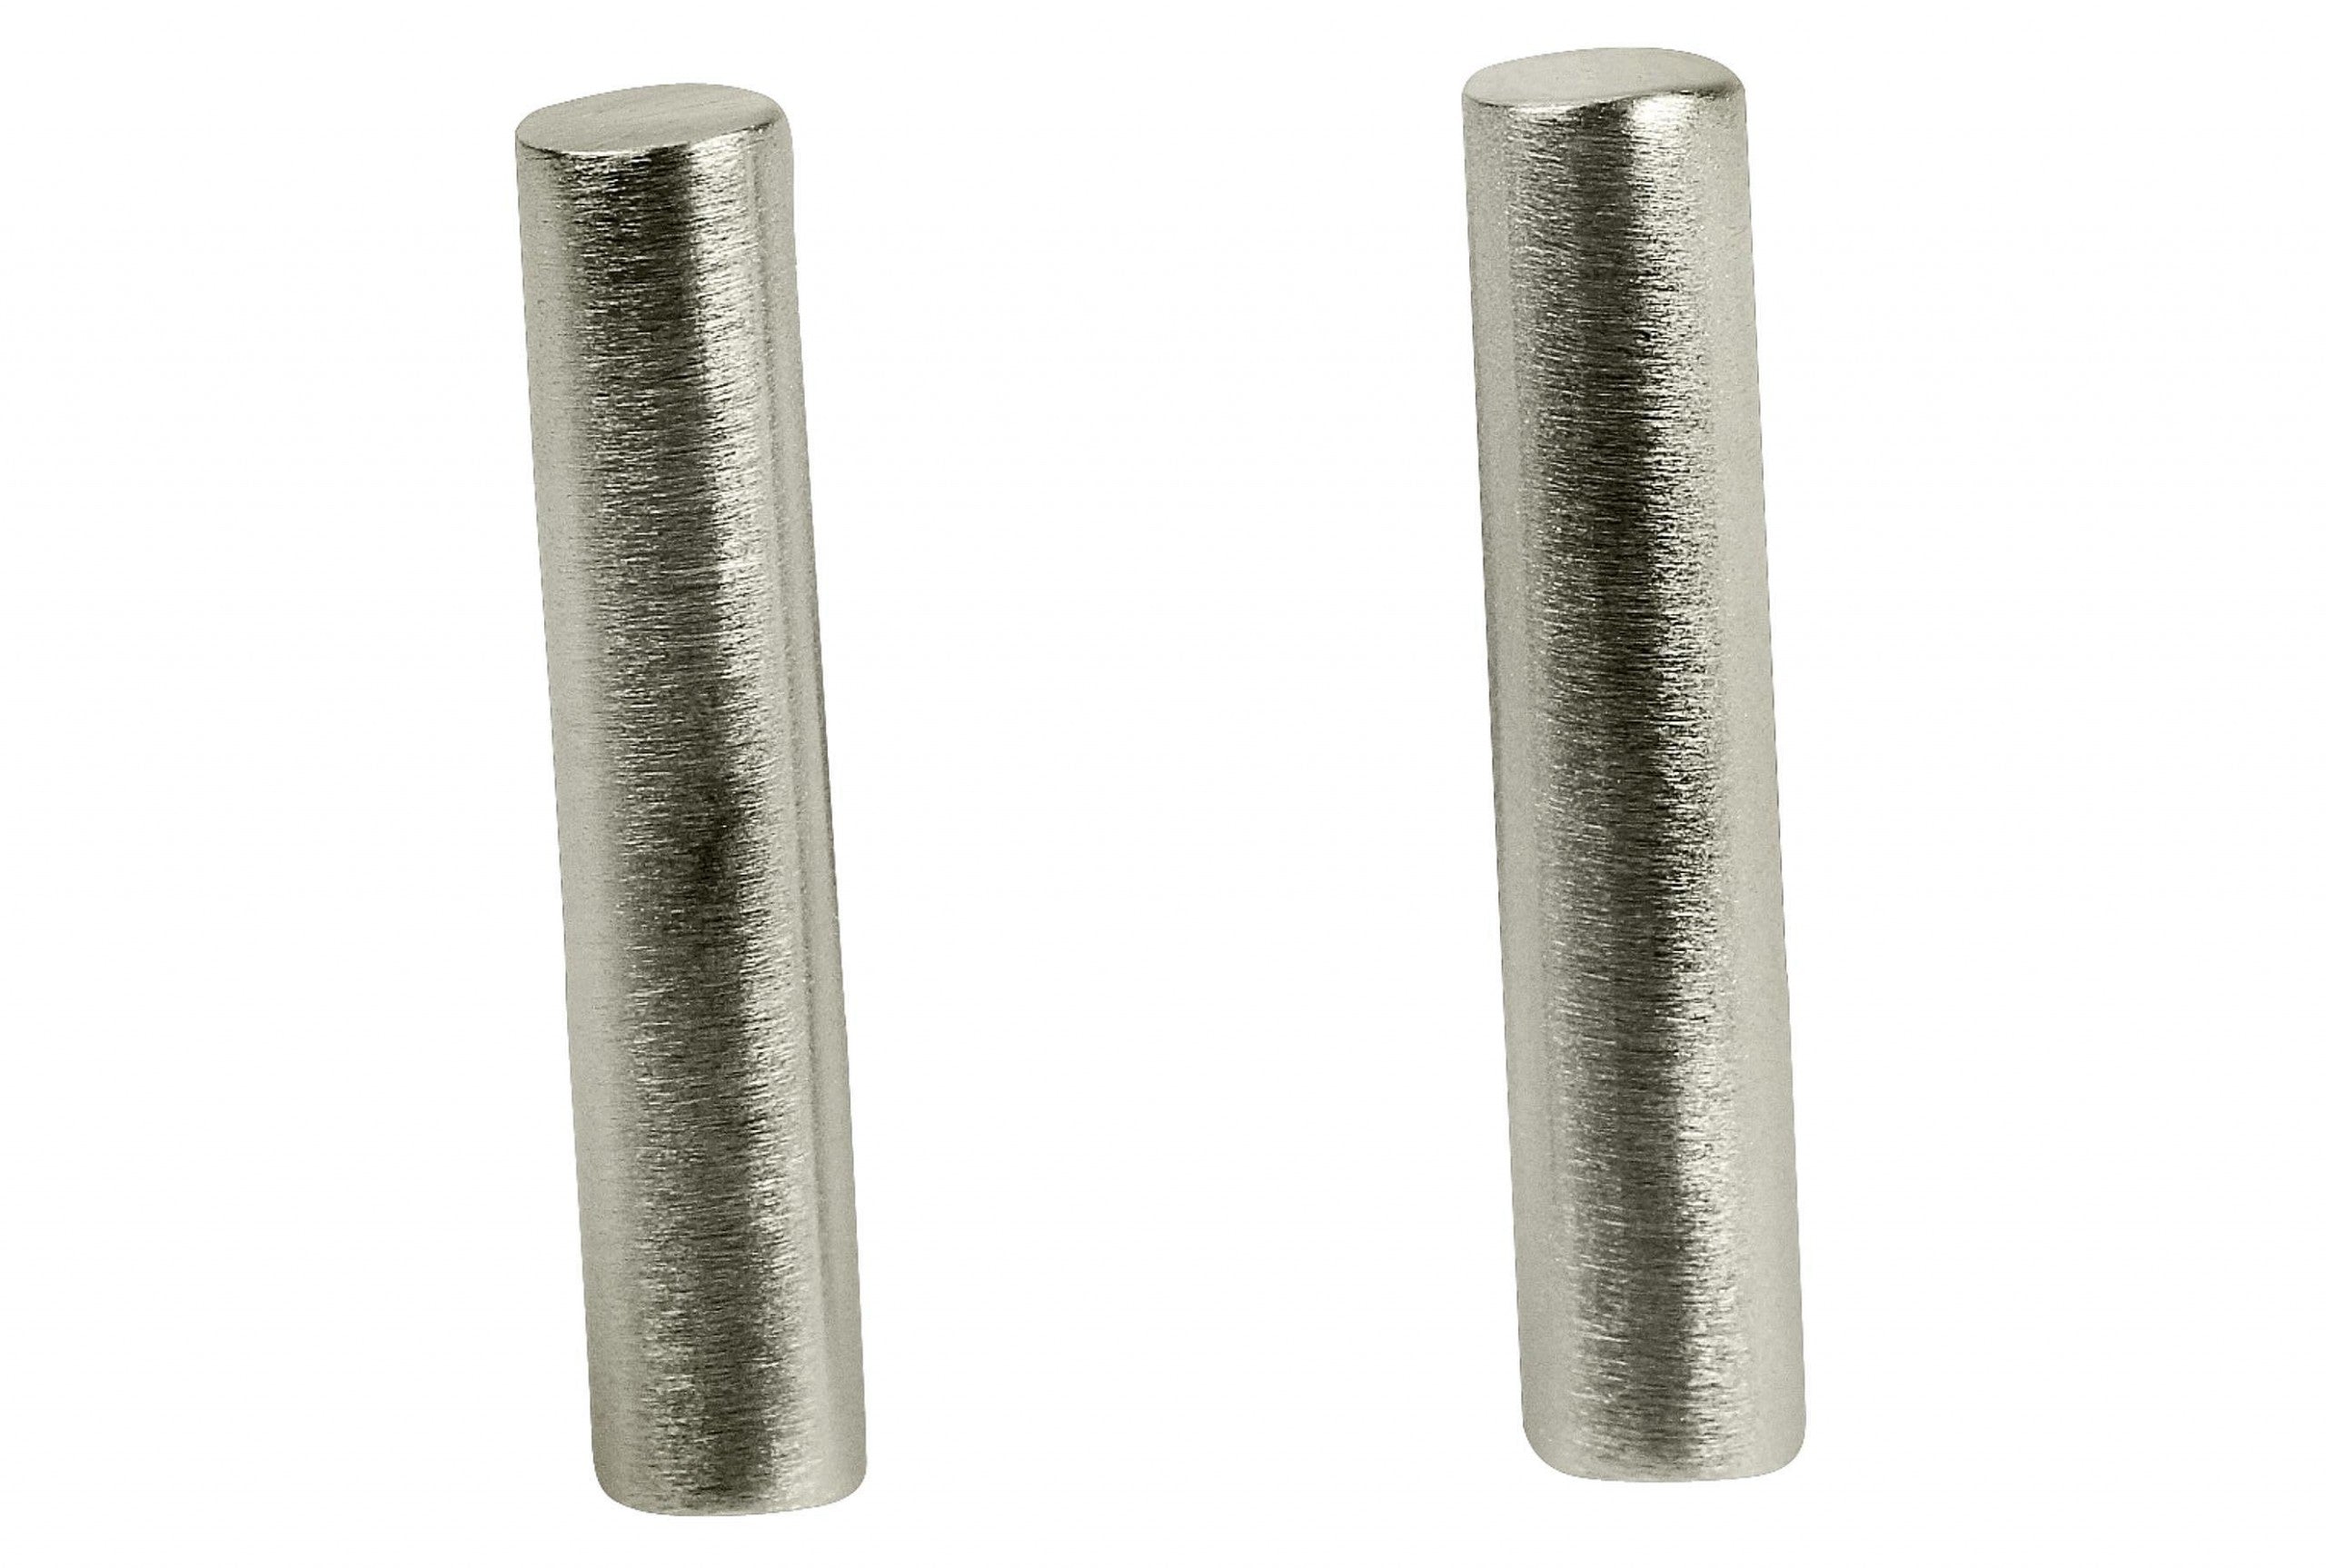 Ohrstecker für Damen aus Silber in Gestalt eines zylindrisch geformten Stäbchens mit einer mattierten Oberfläche.